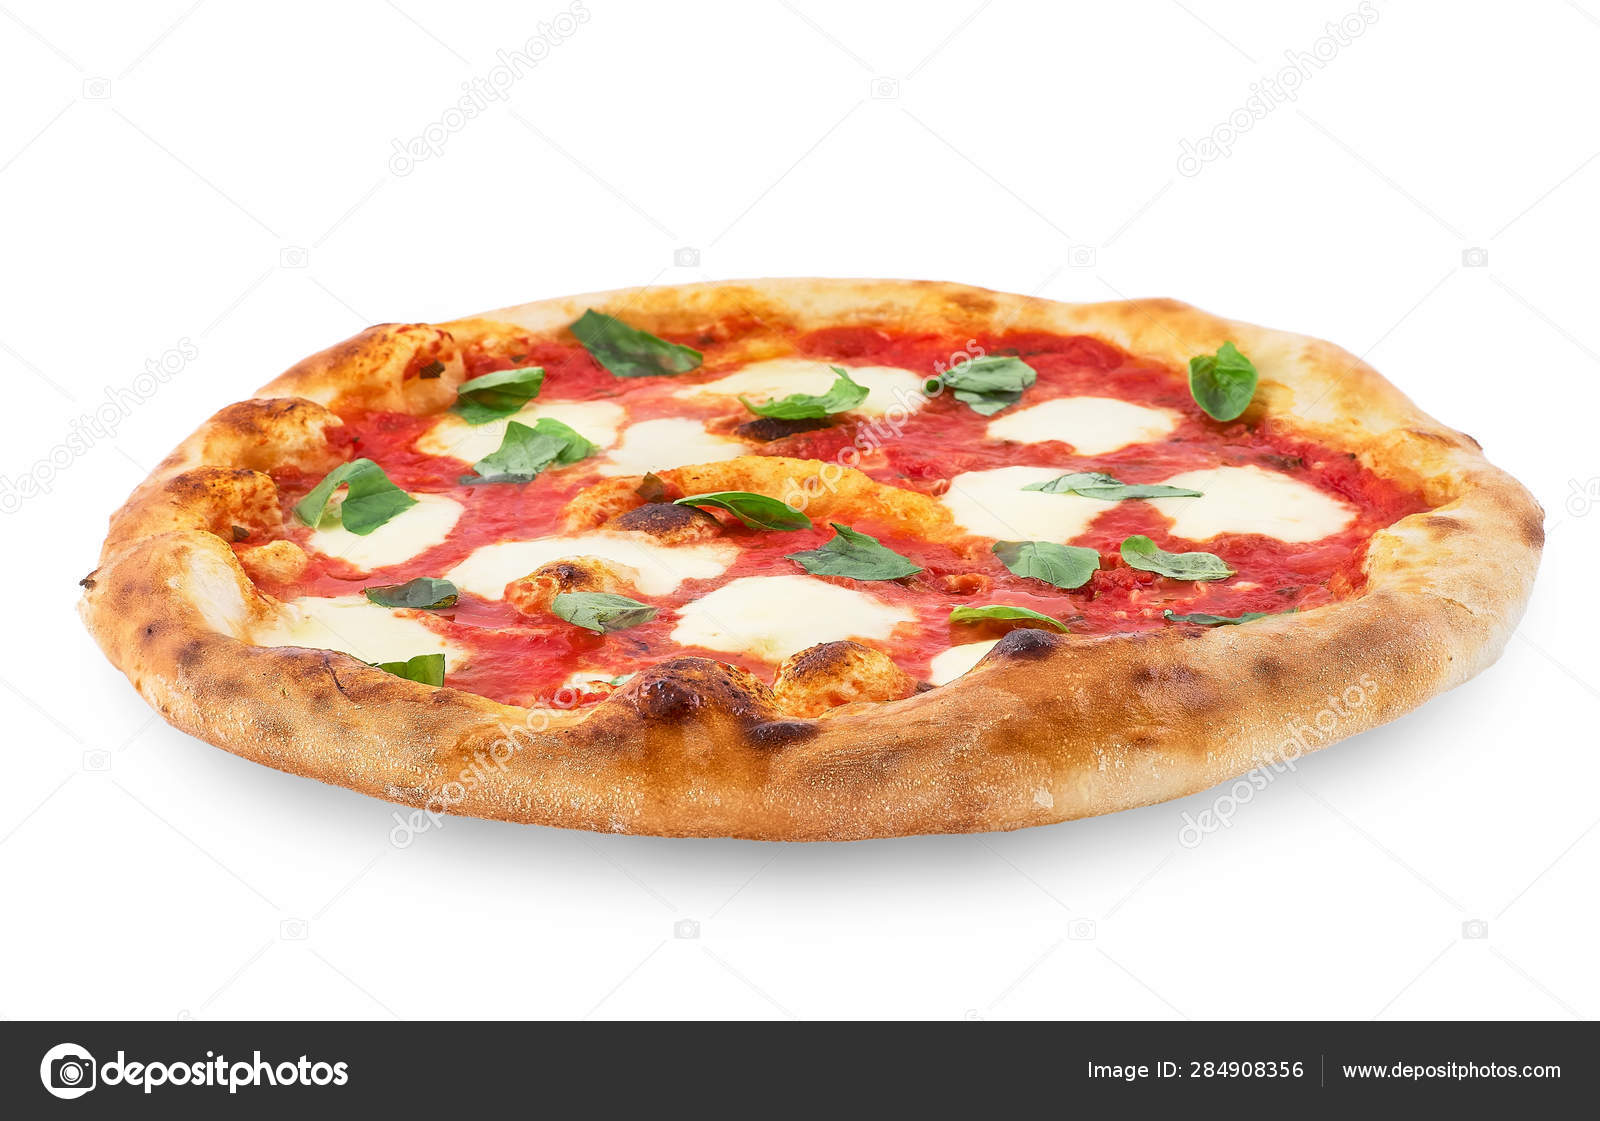 sejle Rationalisering Lao Pizza Margherita på hvid isoleret baggrund. Pizza Margarita med tomater,  basilikum og mozzarellaost . — Stock-foto © izik_md #284908356